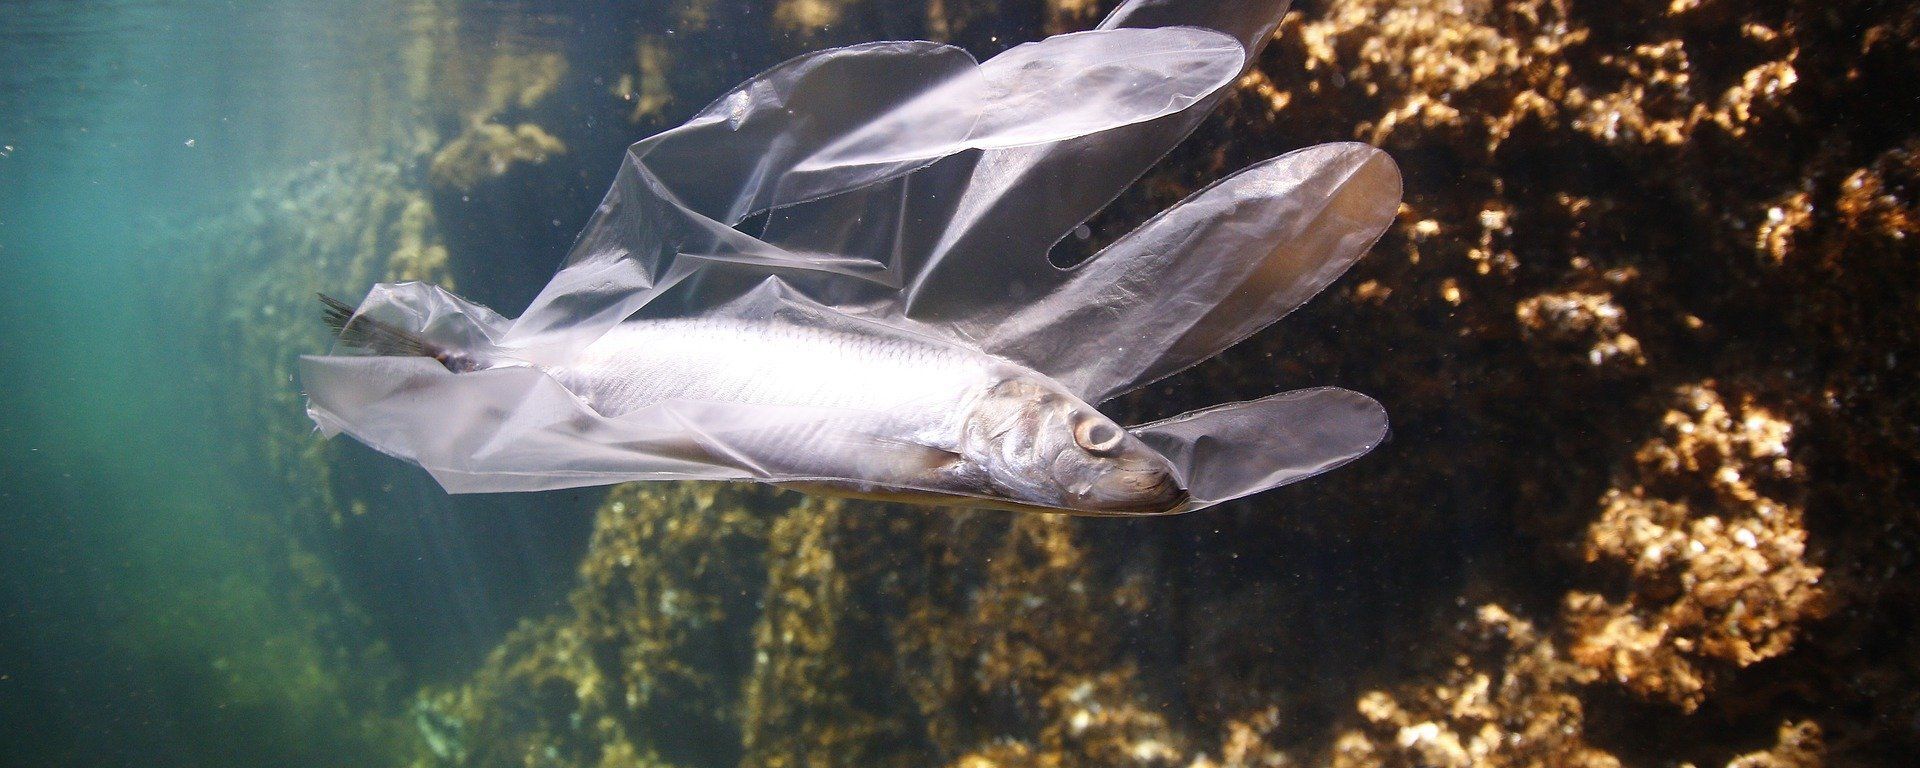 Un pez atrapado en un guante de plástico - Sputnik Mundo, 1920, 09.06.2020